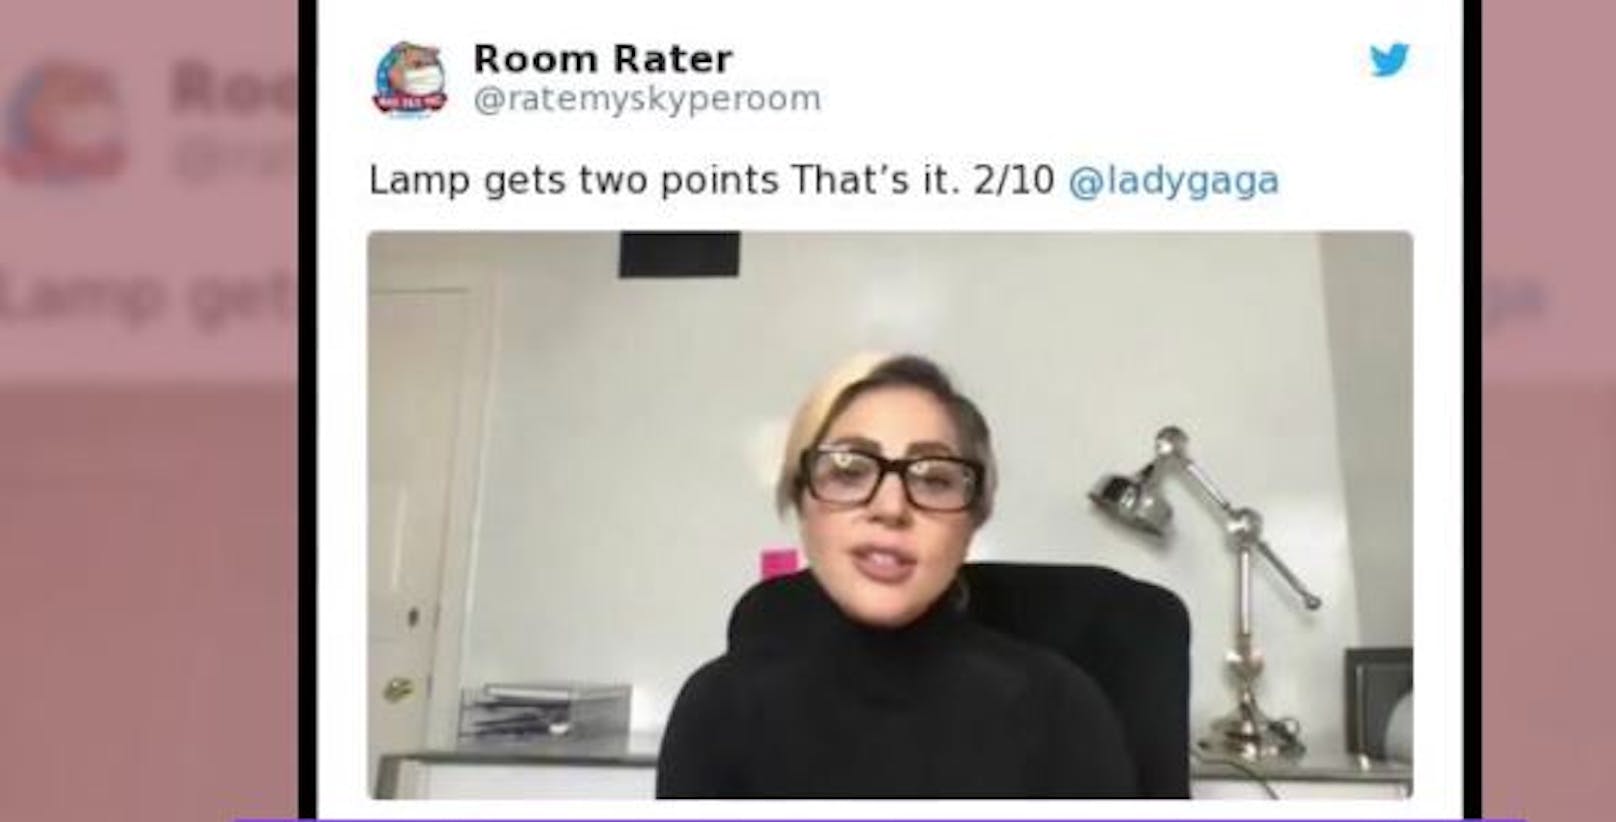 Die sonst so stilbewusste<strong> Lady Gaga</strong> kommt bei "Room Rater" nicht gut weg. Ihre Chrom-Bürolampe bringt ihr nur 2 von 10 Punkten.